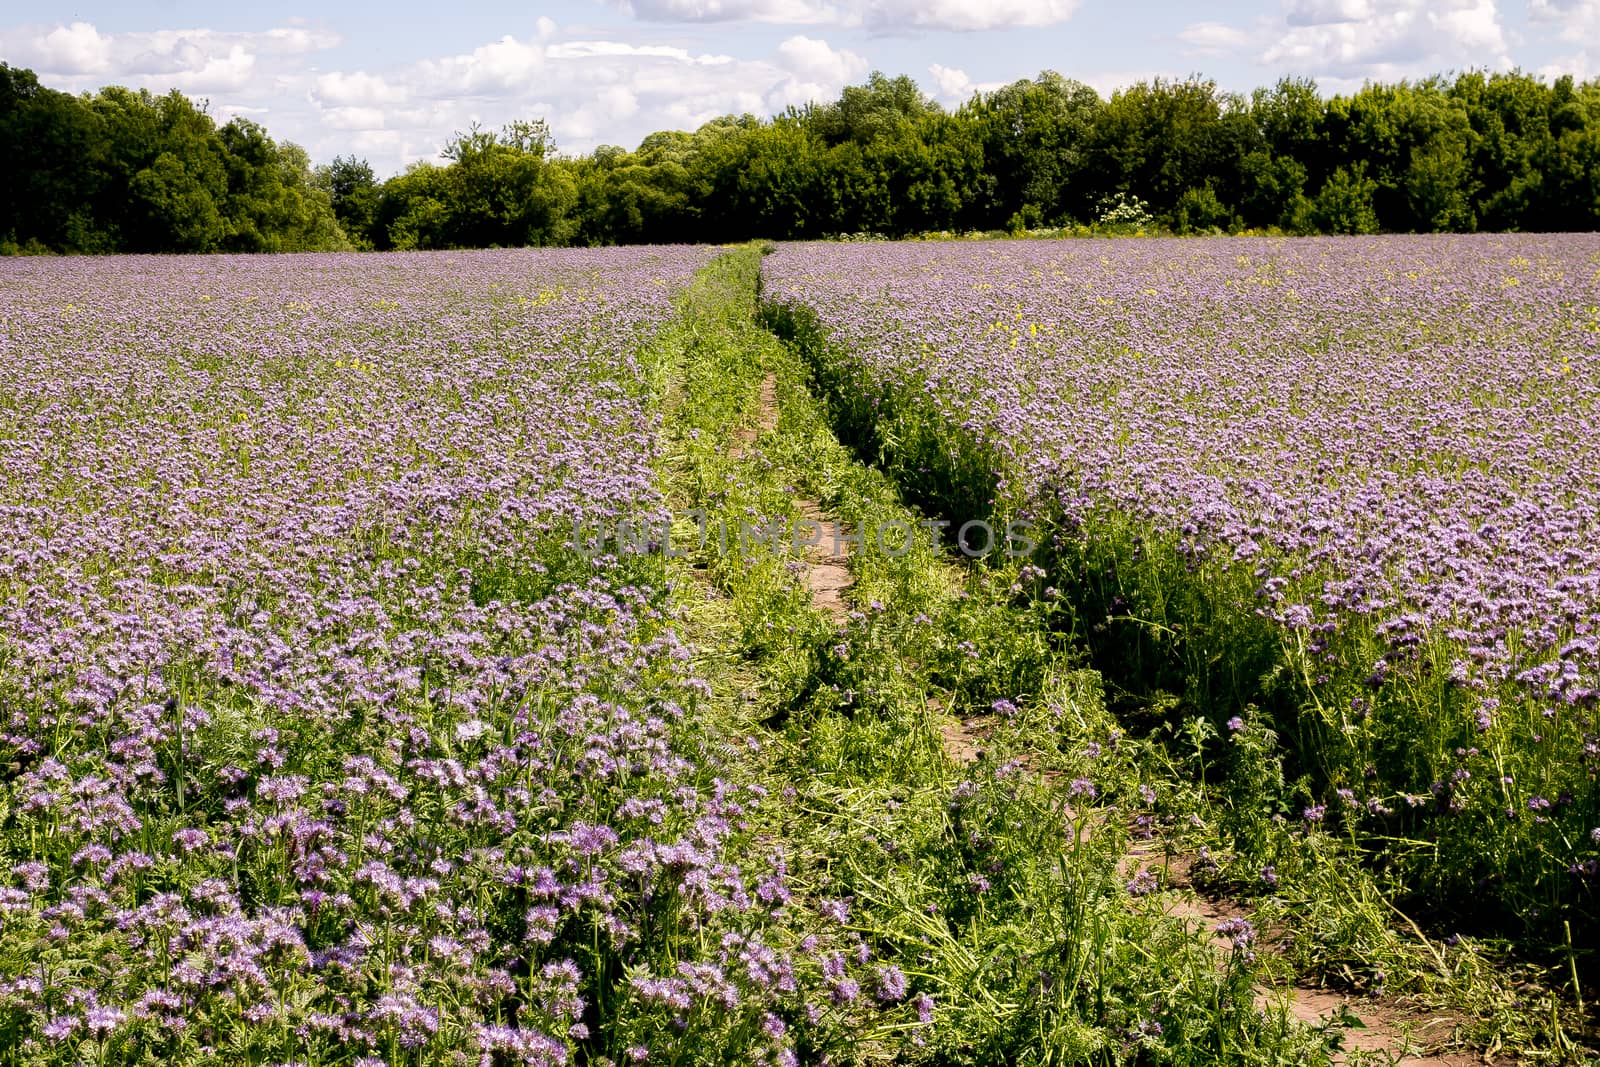 purple lavender flowers in the field.